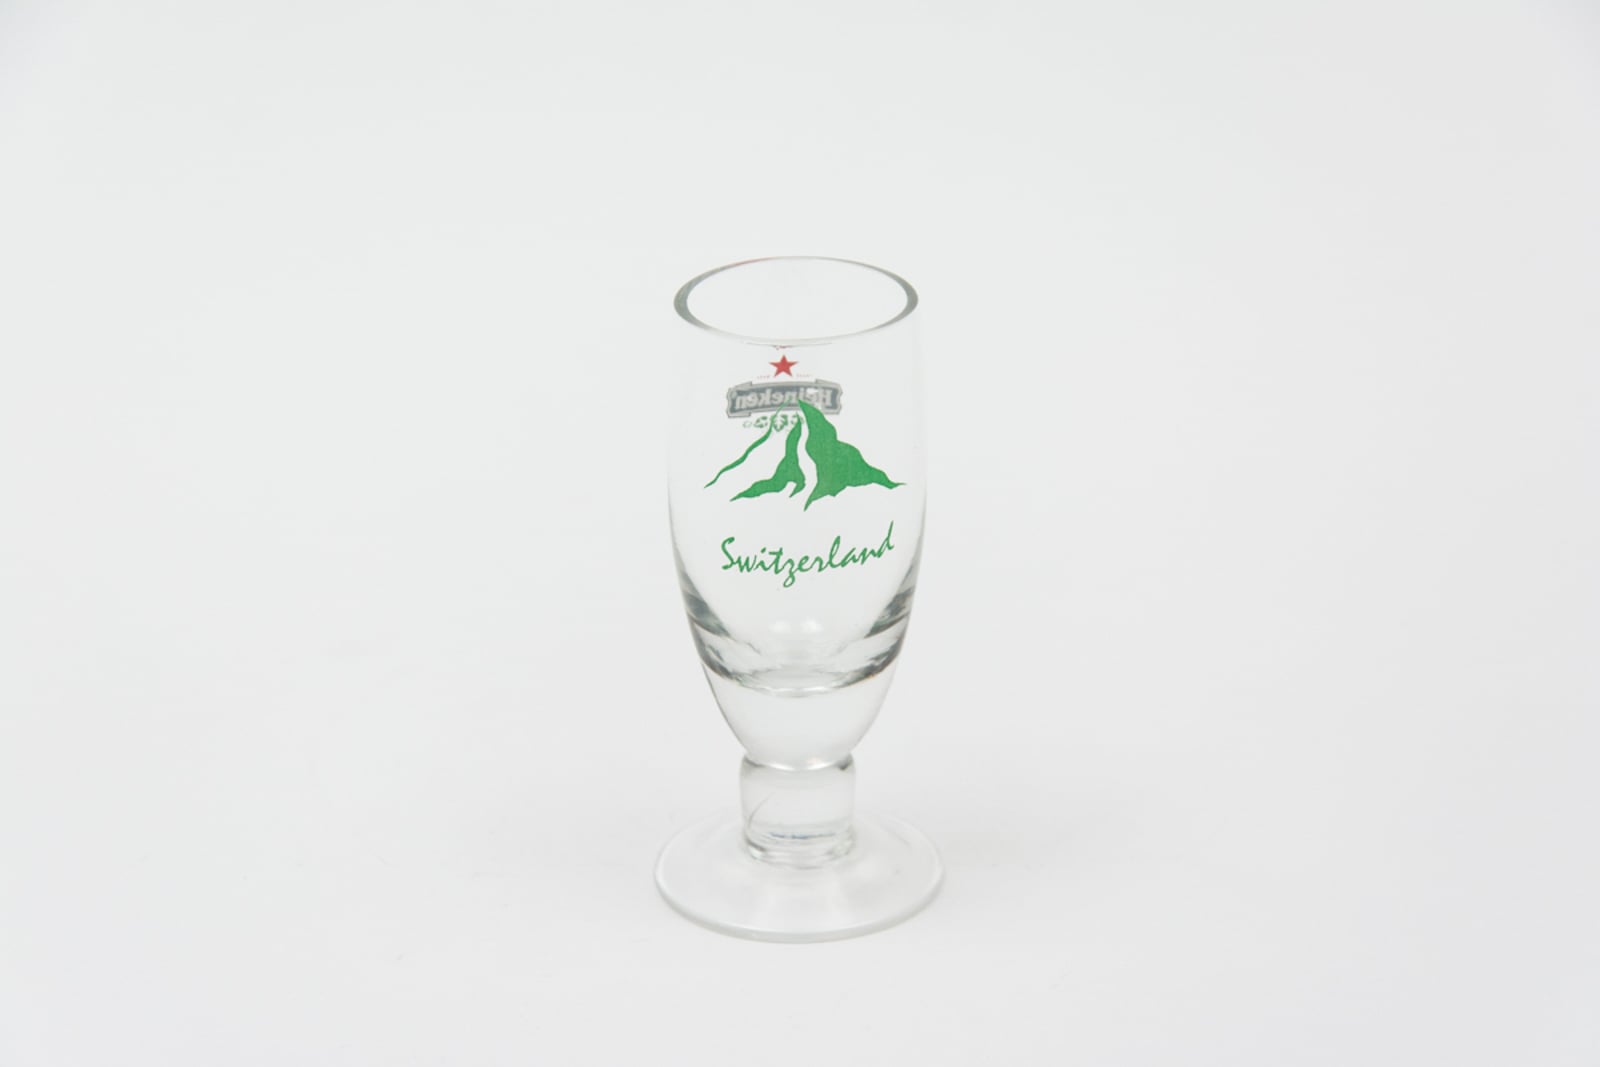 Heineken Switzerland Flute Footed Glassware